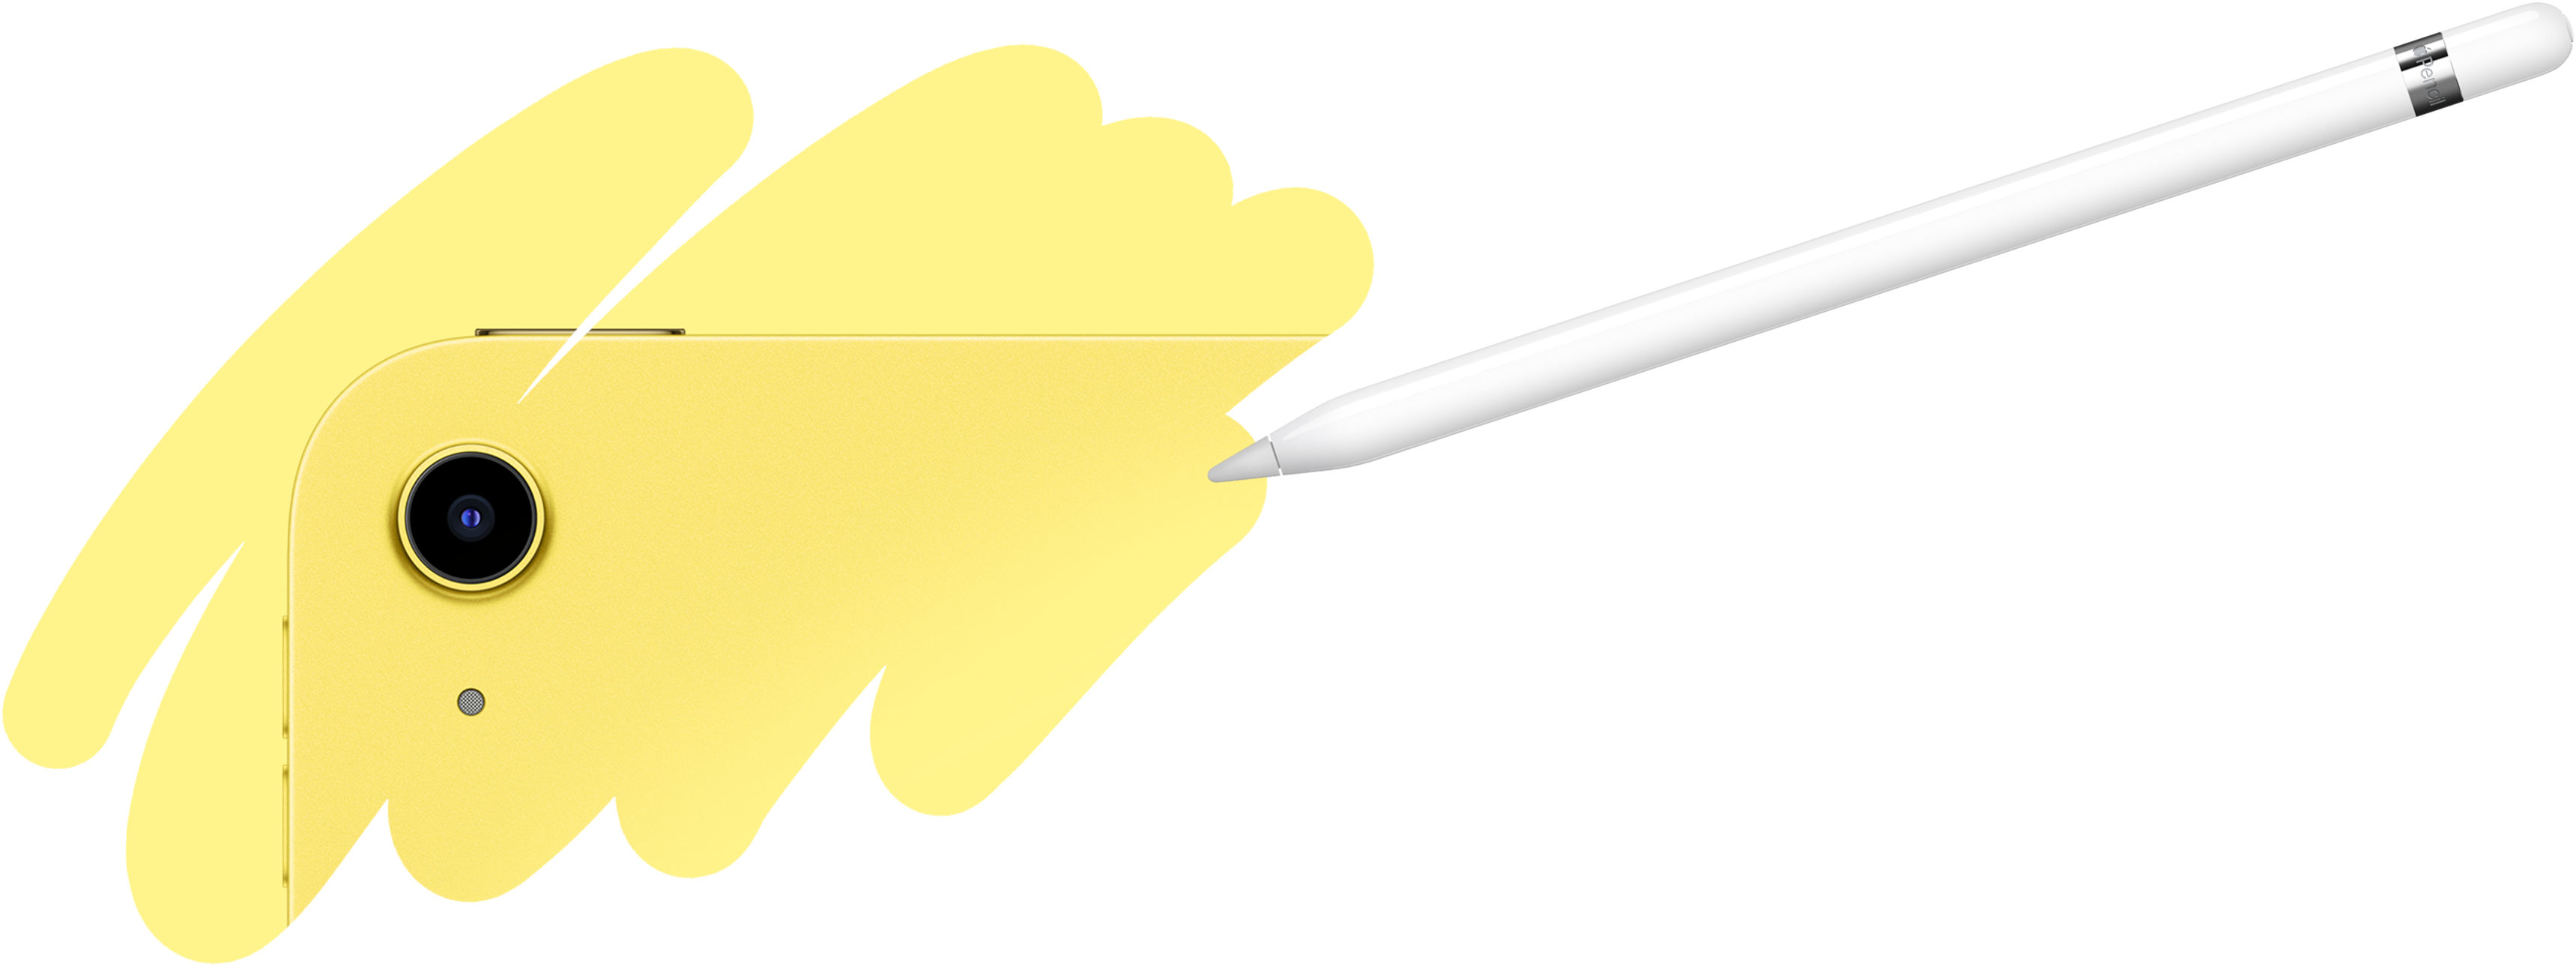 Trazo de Apple Pencil revelando la parte trasera del iPad, mostrando la cámara trasera.